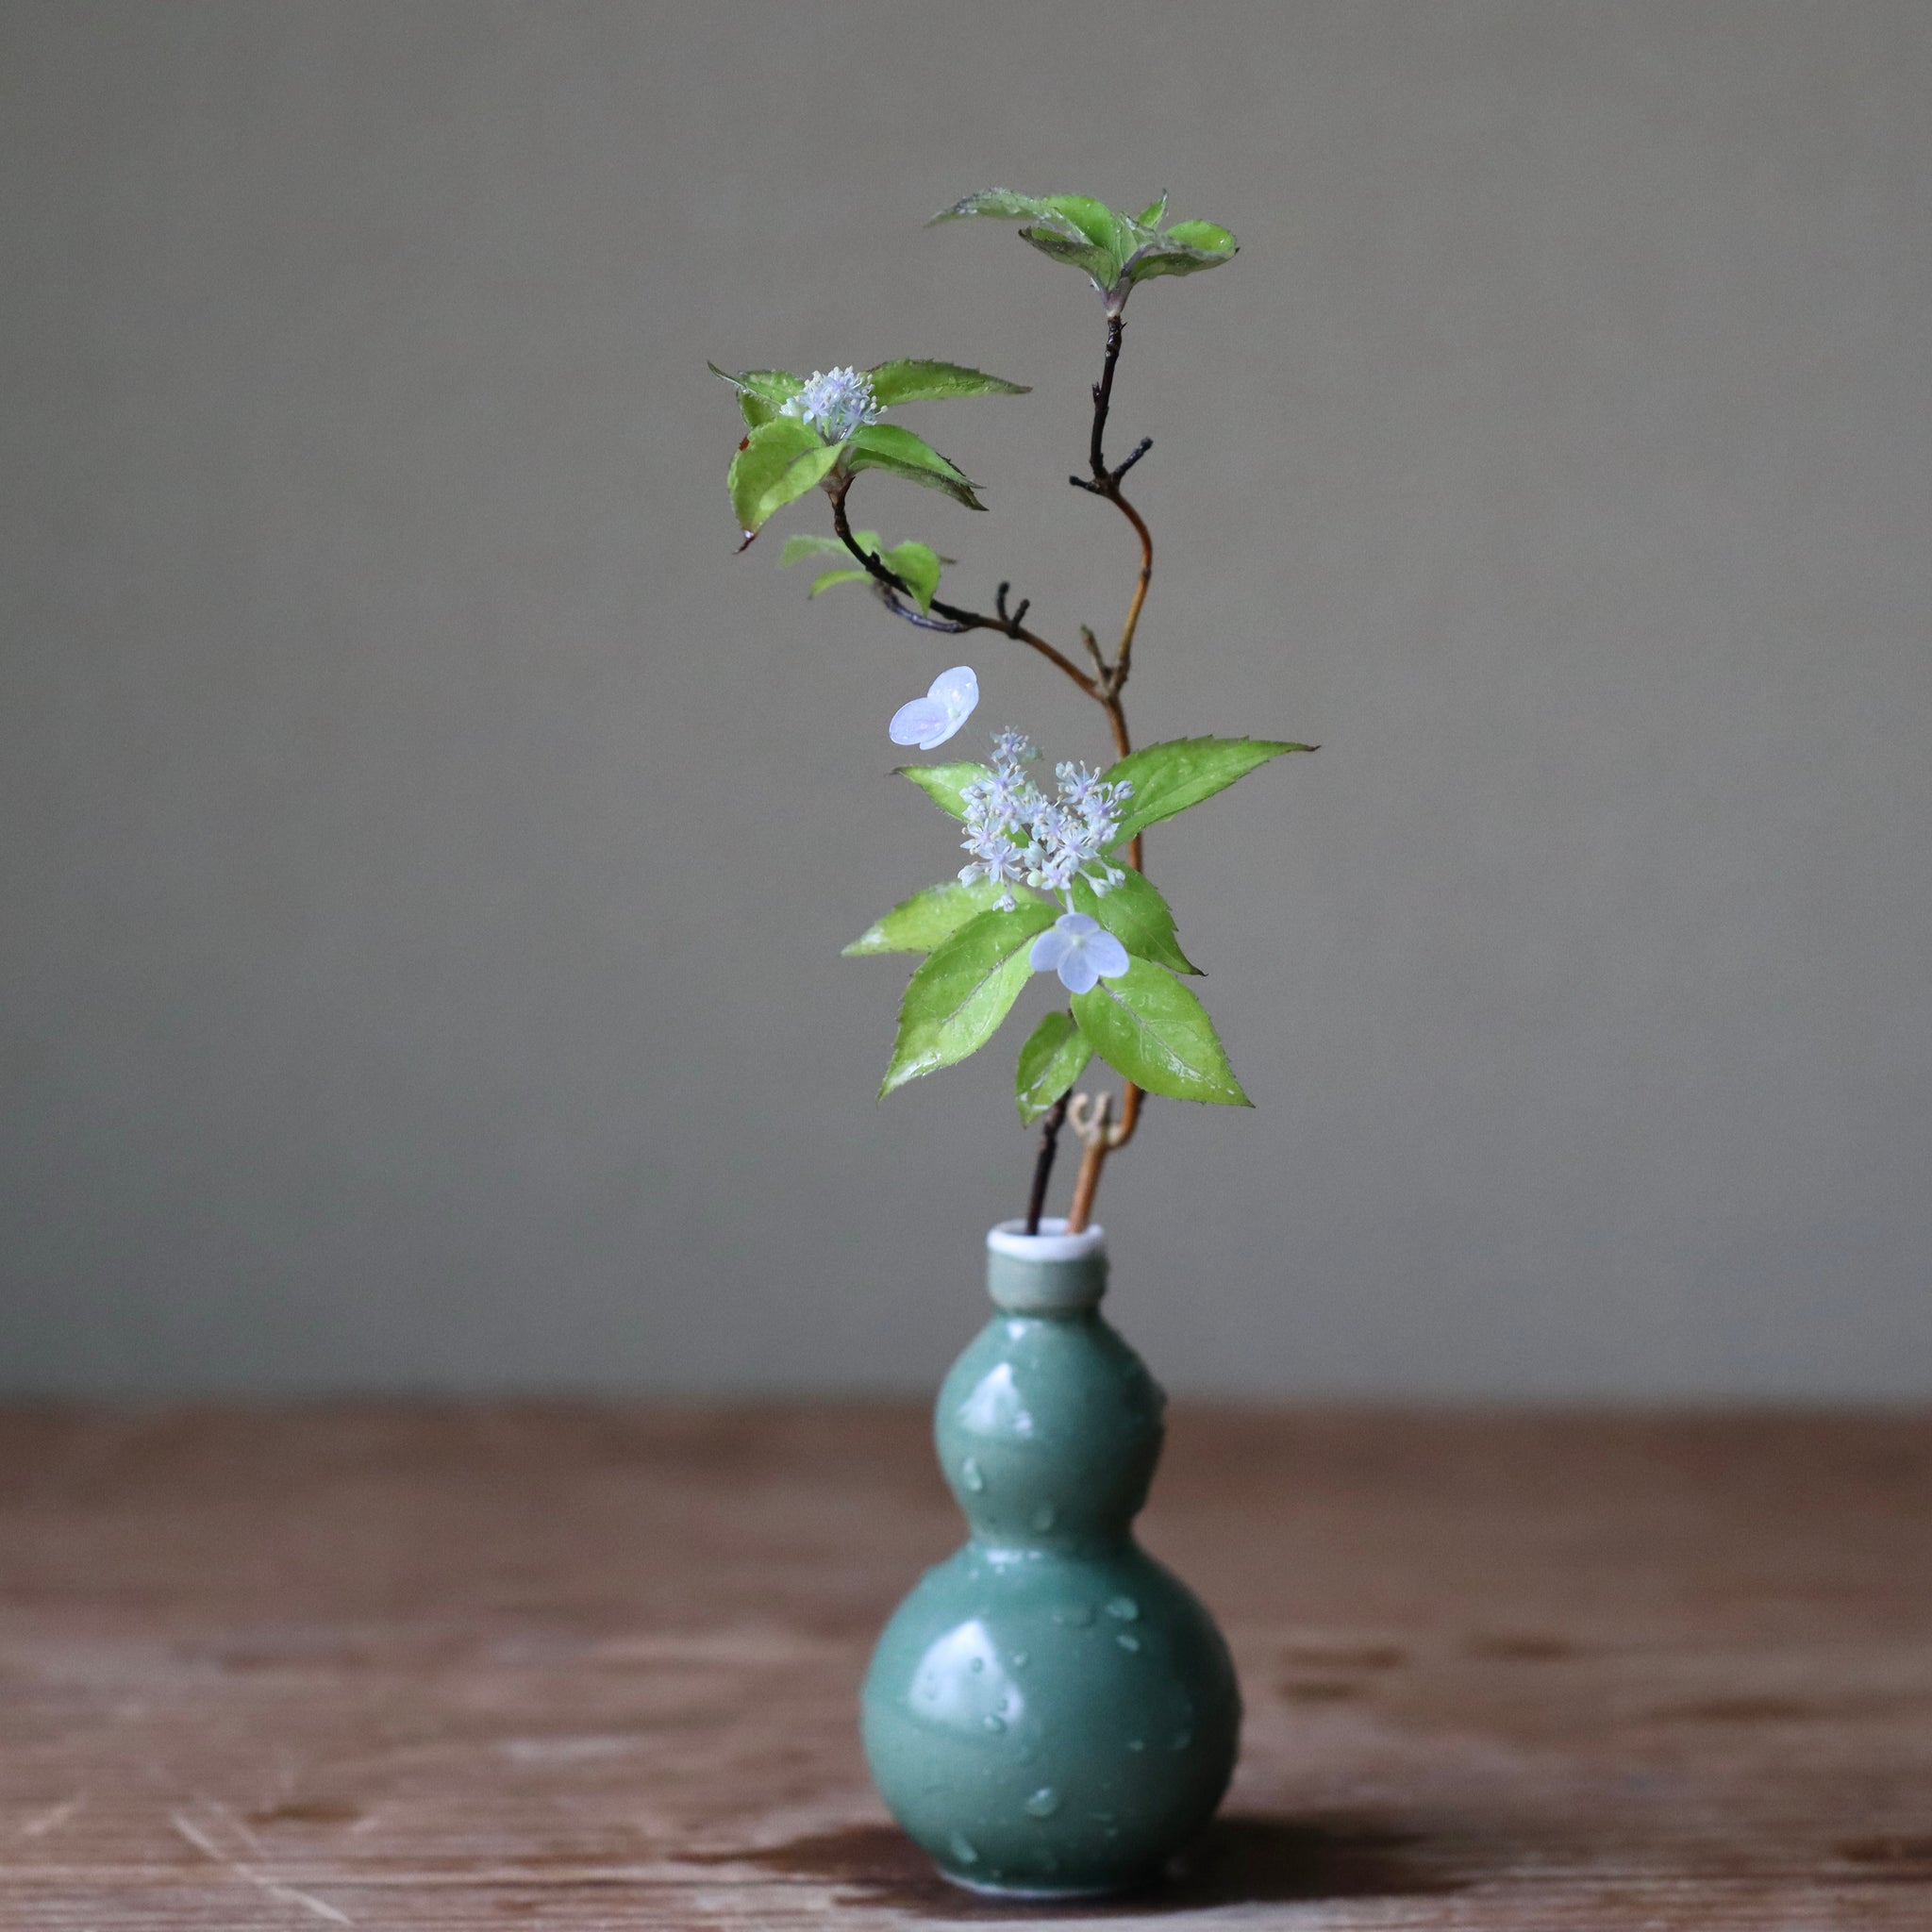 Hydrangea serrata ‘Seto no Tsuki’ (Mountain hydrangea ‘Seto no Tsuki,’ yama ajisai ‘Seto no Tsuki’)